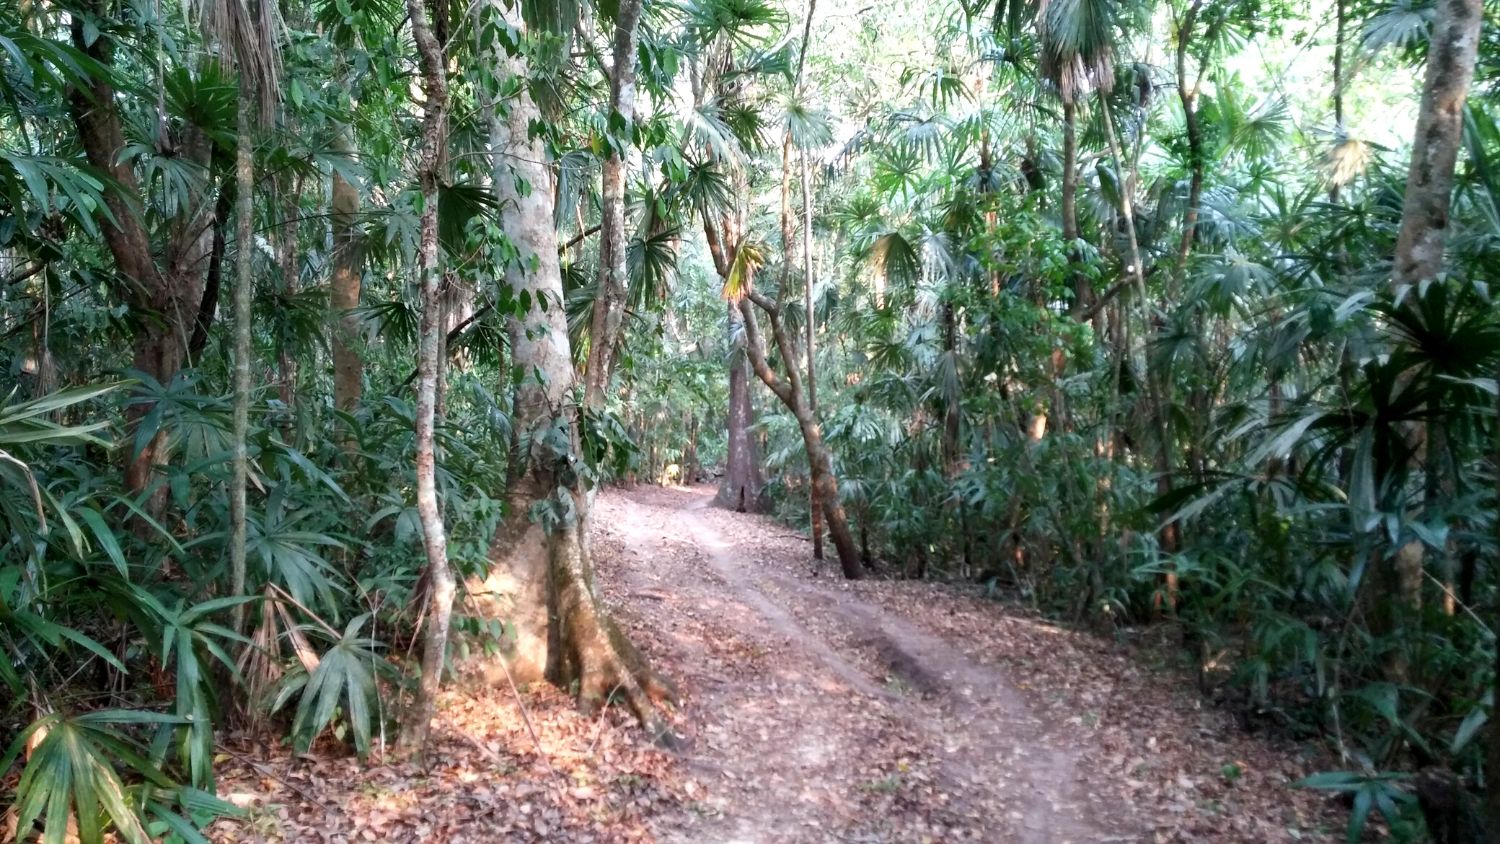 A jungle road to the El-Peru Waka site